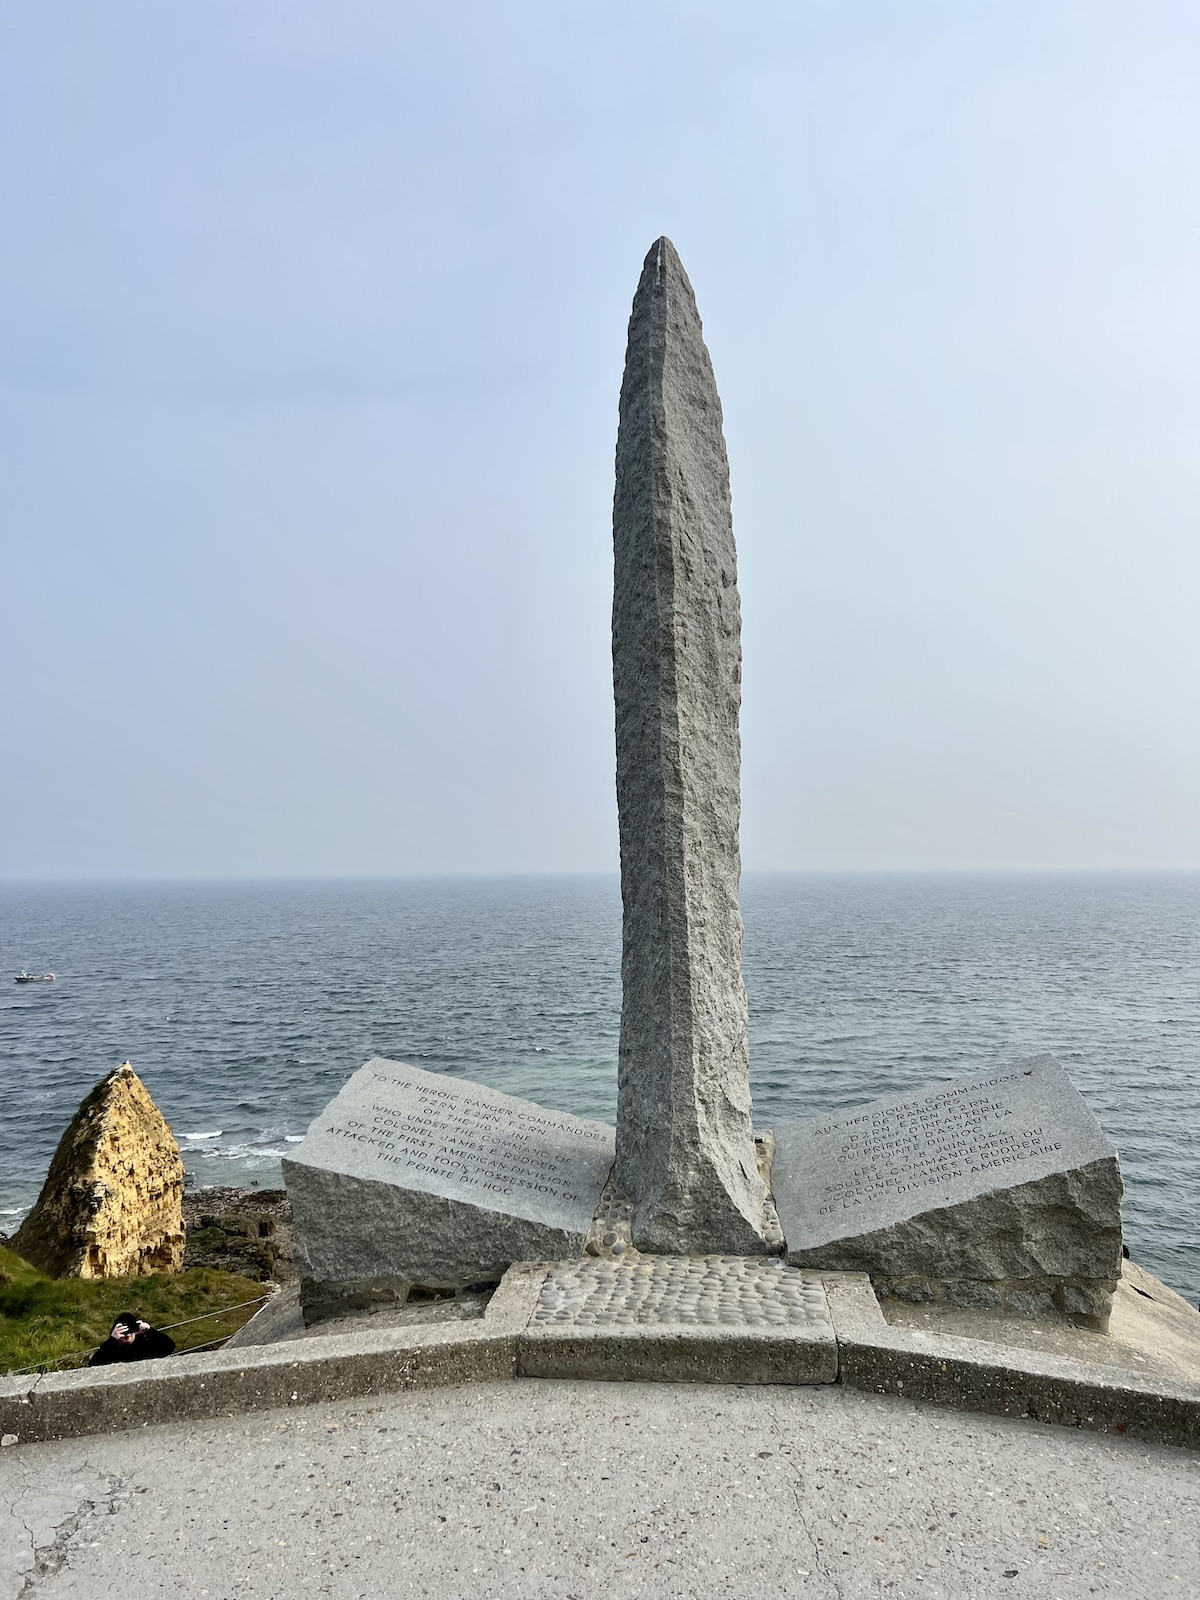 Pointe du Hoc monument Normandy France